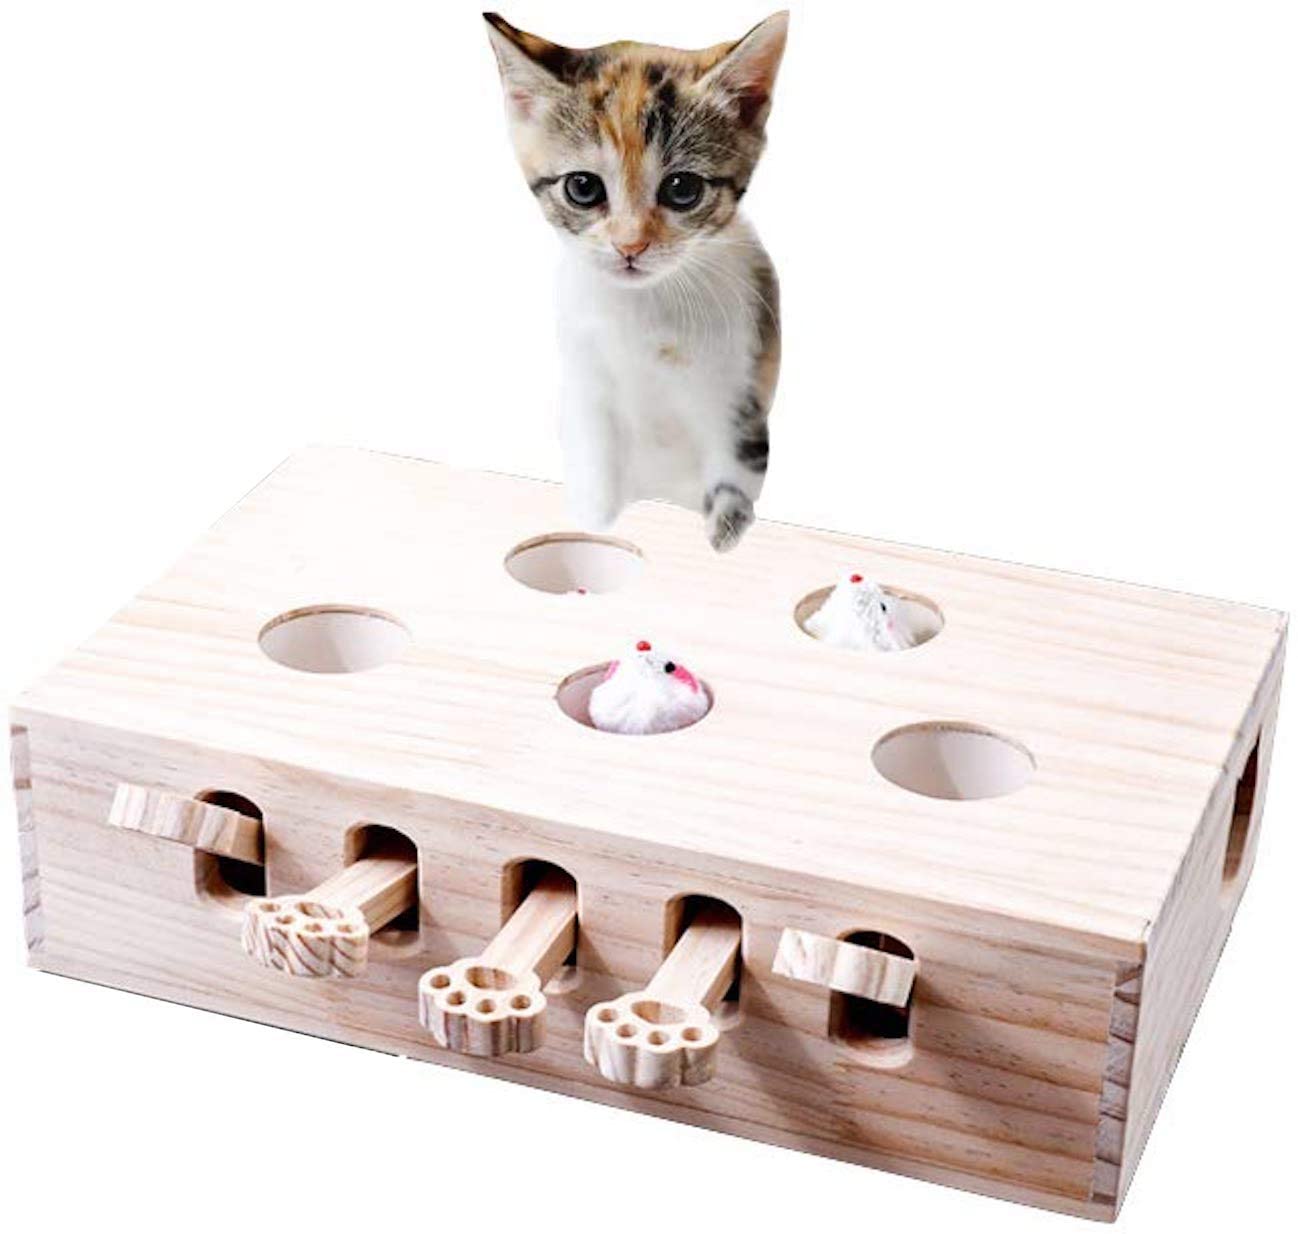 猫 おもちゃ 猫じゃらし 木製 モグラ叩き ネズミ 猫遊び 安全素材 木箱 ねこじゃらし ペット マウス 知育玩具 ペットグッズ 自分で遊ぶ好奇心をくすぐる もぐらたたき 運動不足 ストレス解消